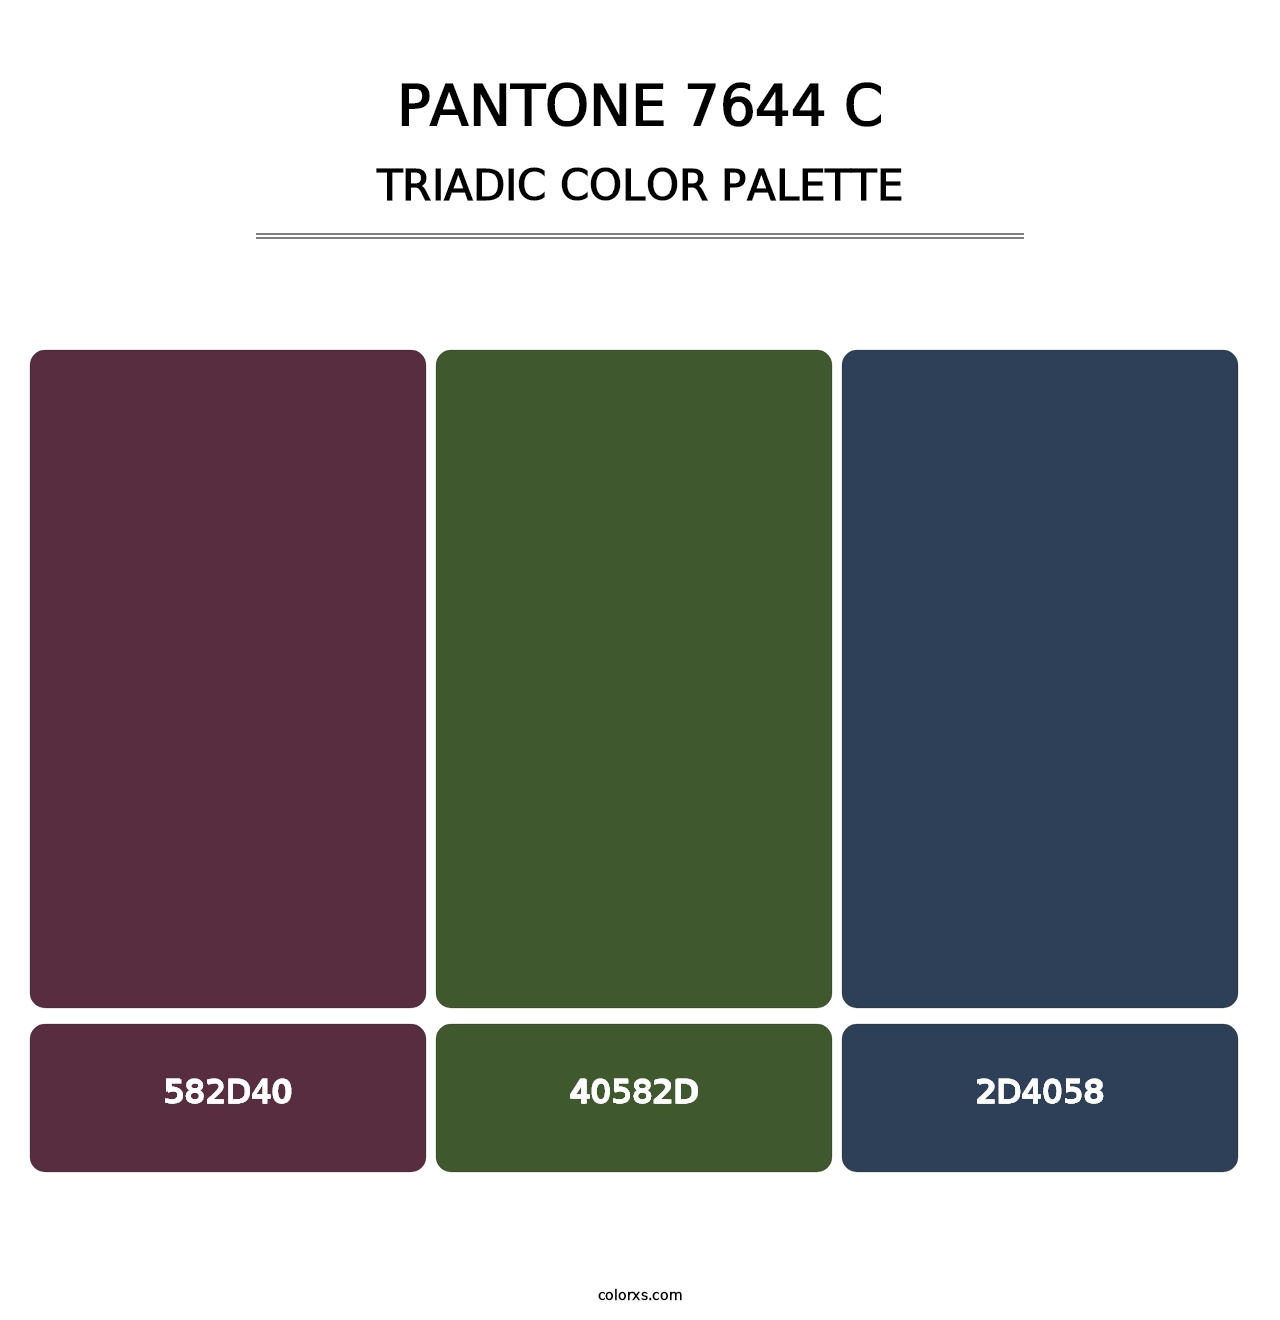 PANTONE 7644 C - Triadic Color Palette